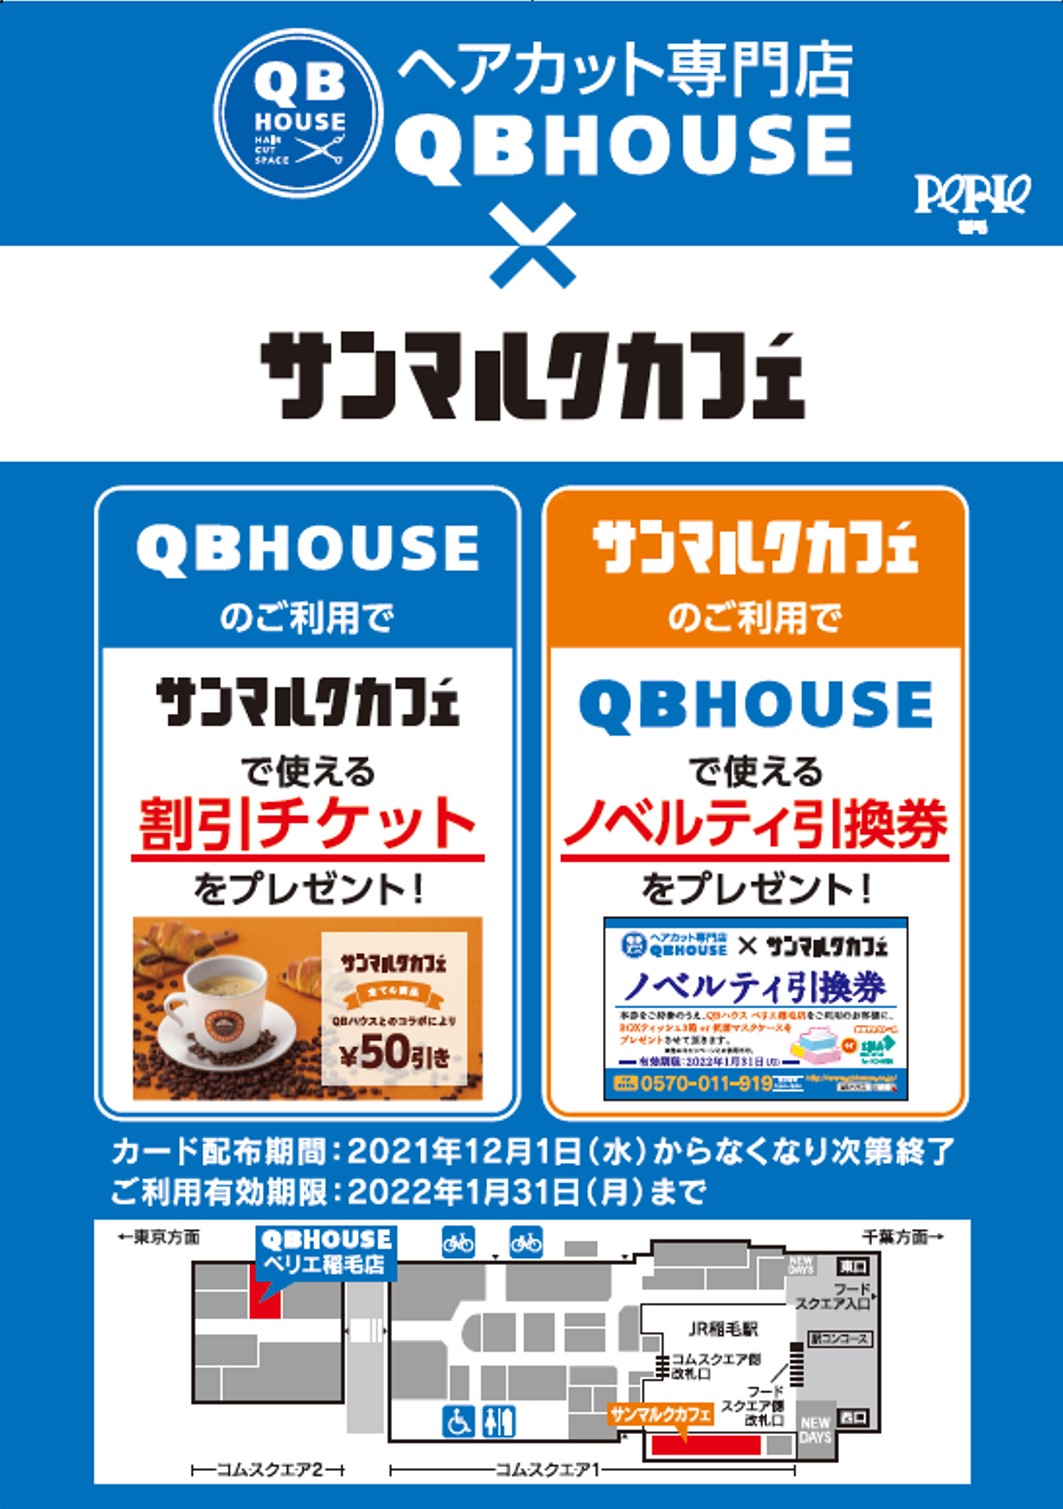 【QBHOUSE×サンマルクカフェ】コラボレーションキャンペーンのお知らせ